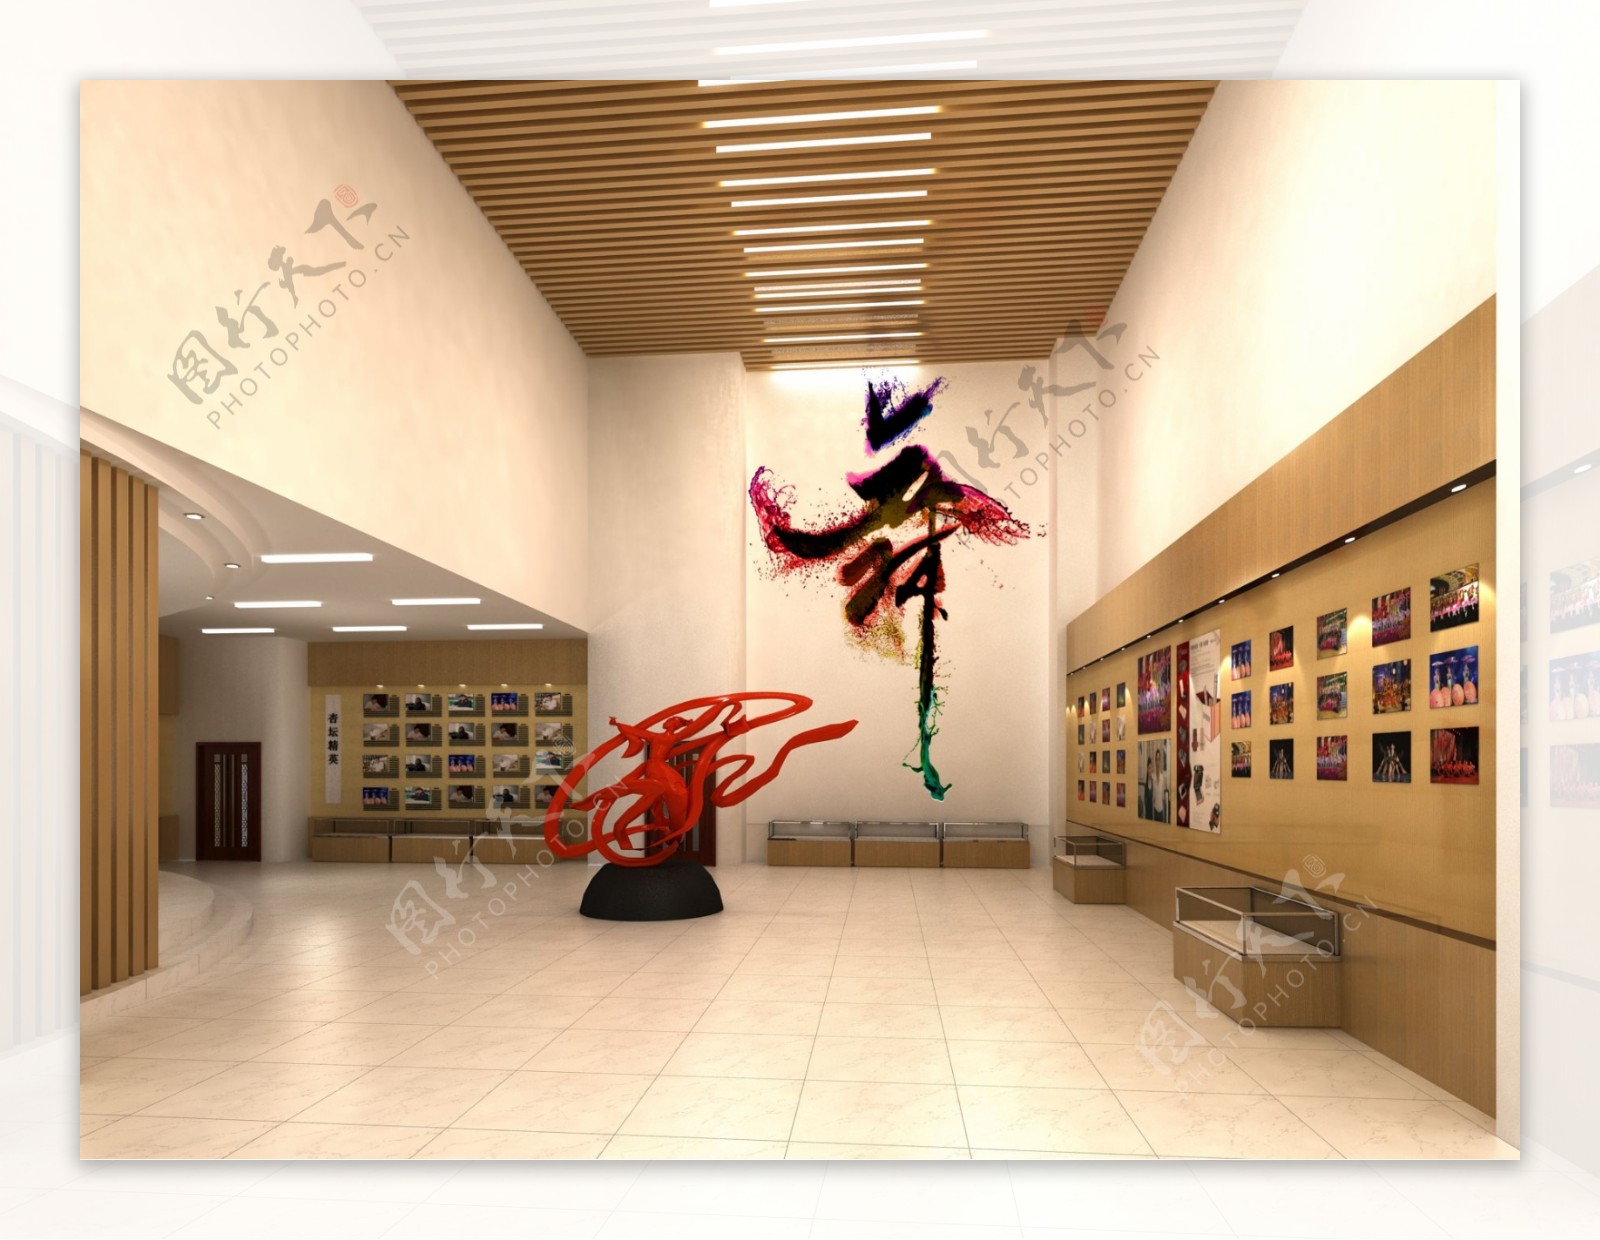 舞蹈系展厅图片